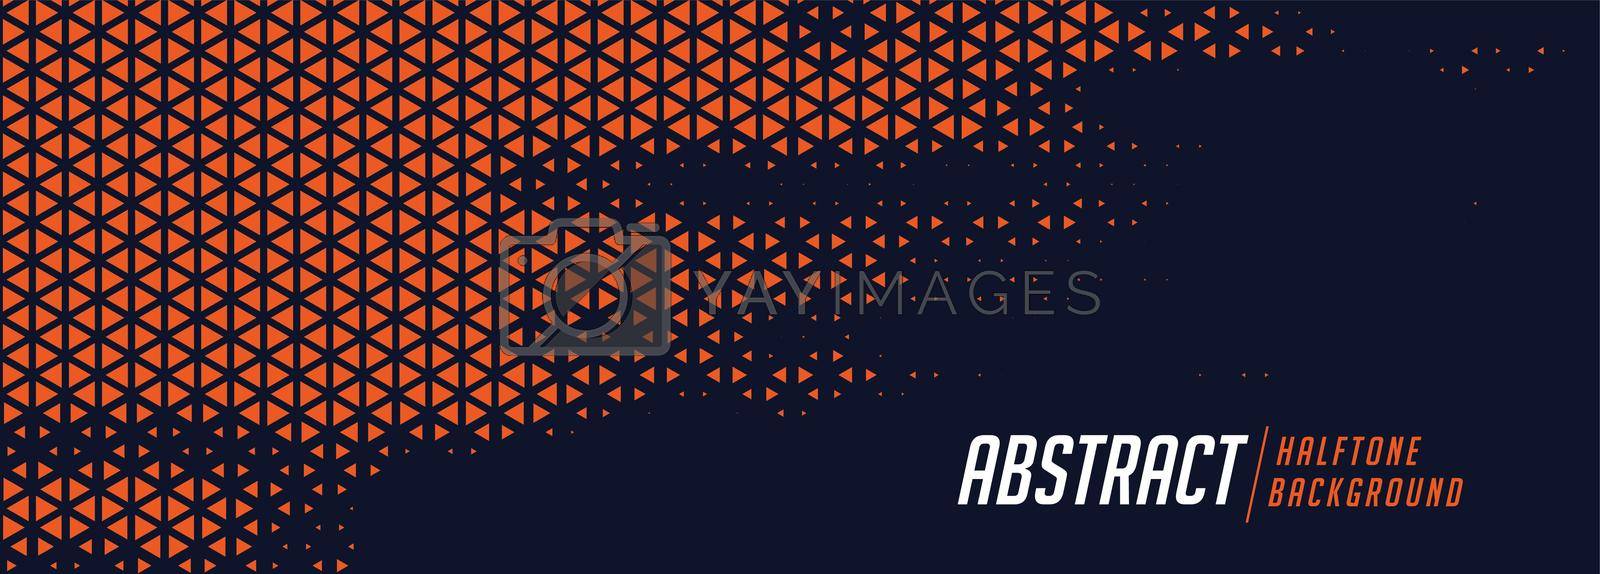 Royalty free image of stylish orange halftone triangle pattern background by mstjahanara